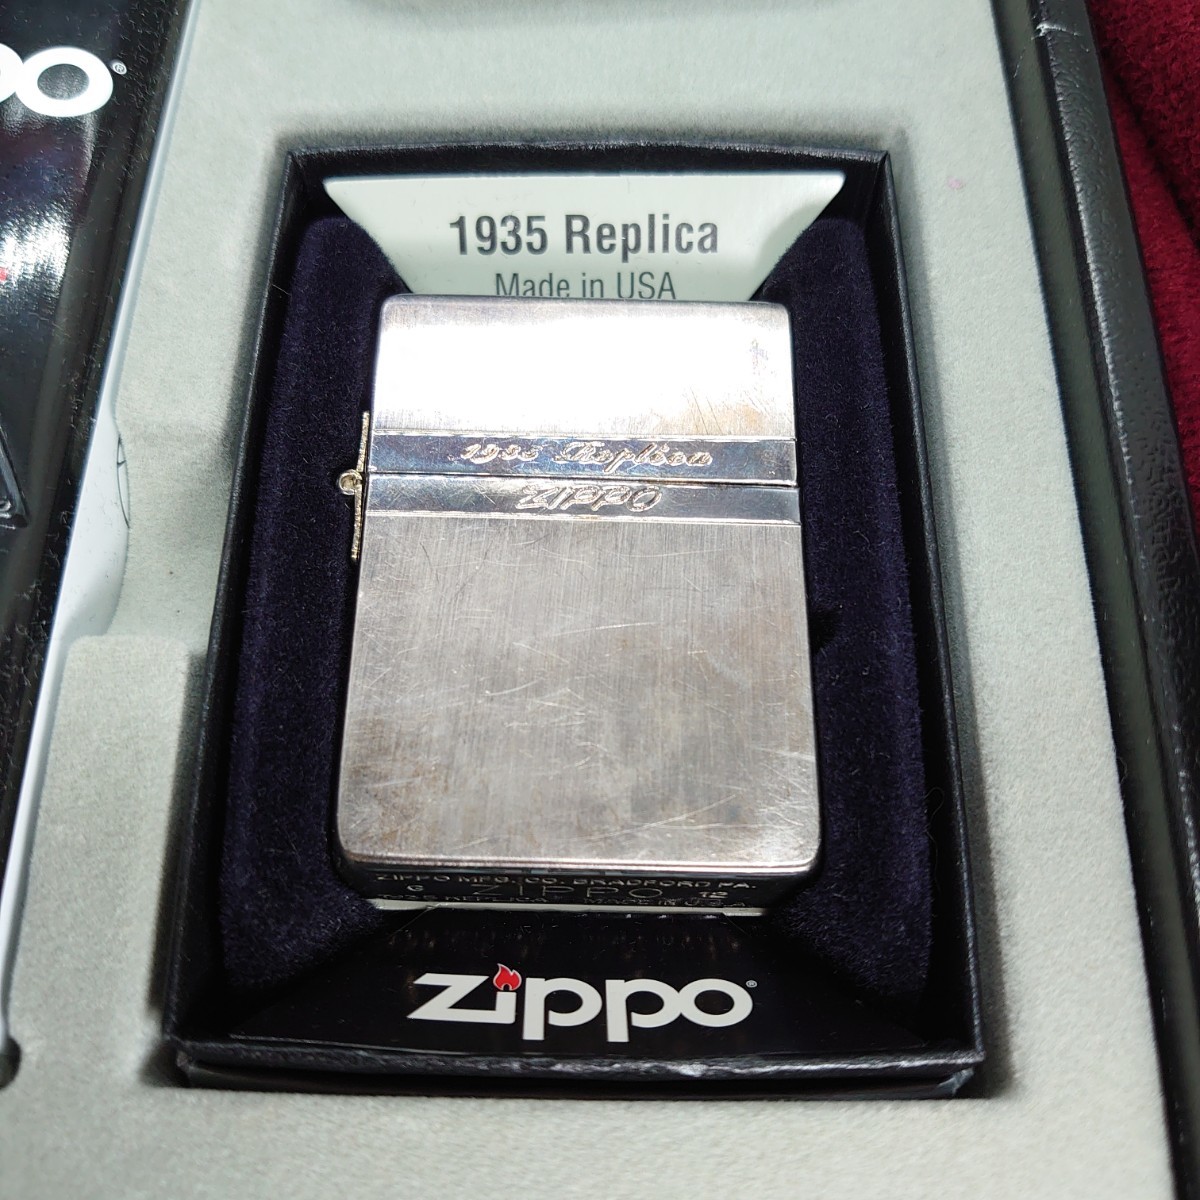 9170【火花確認済】1935 REPLICA ZIPPO 刻印 G 12 レプリカ ジッポーライター オイル フリント 箱付き の画像1